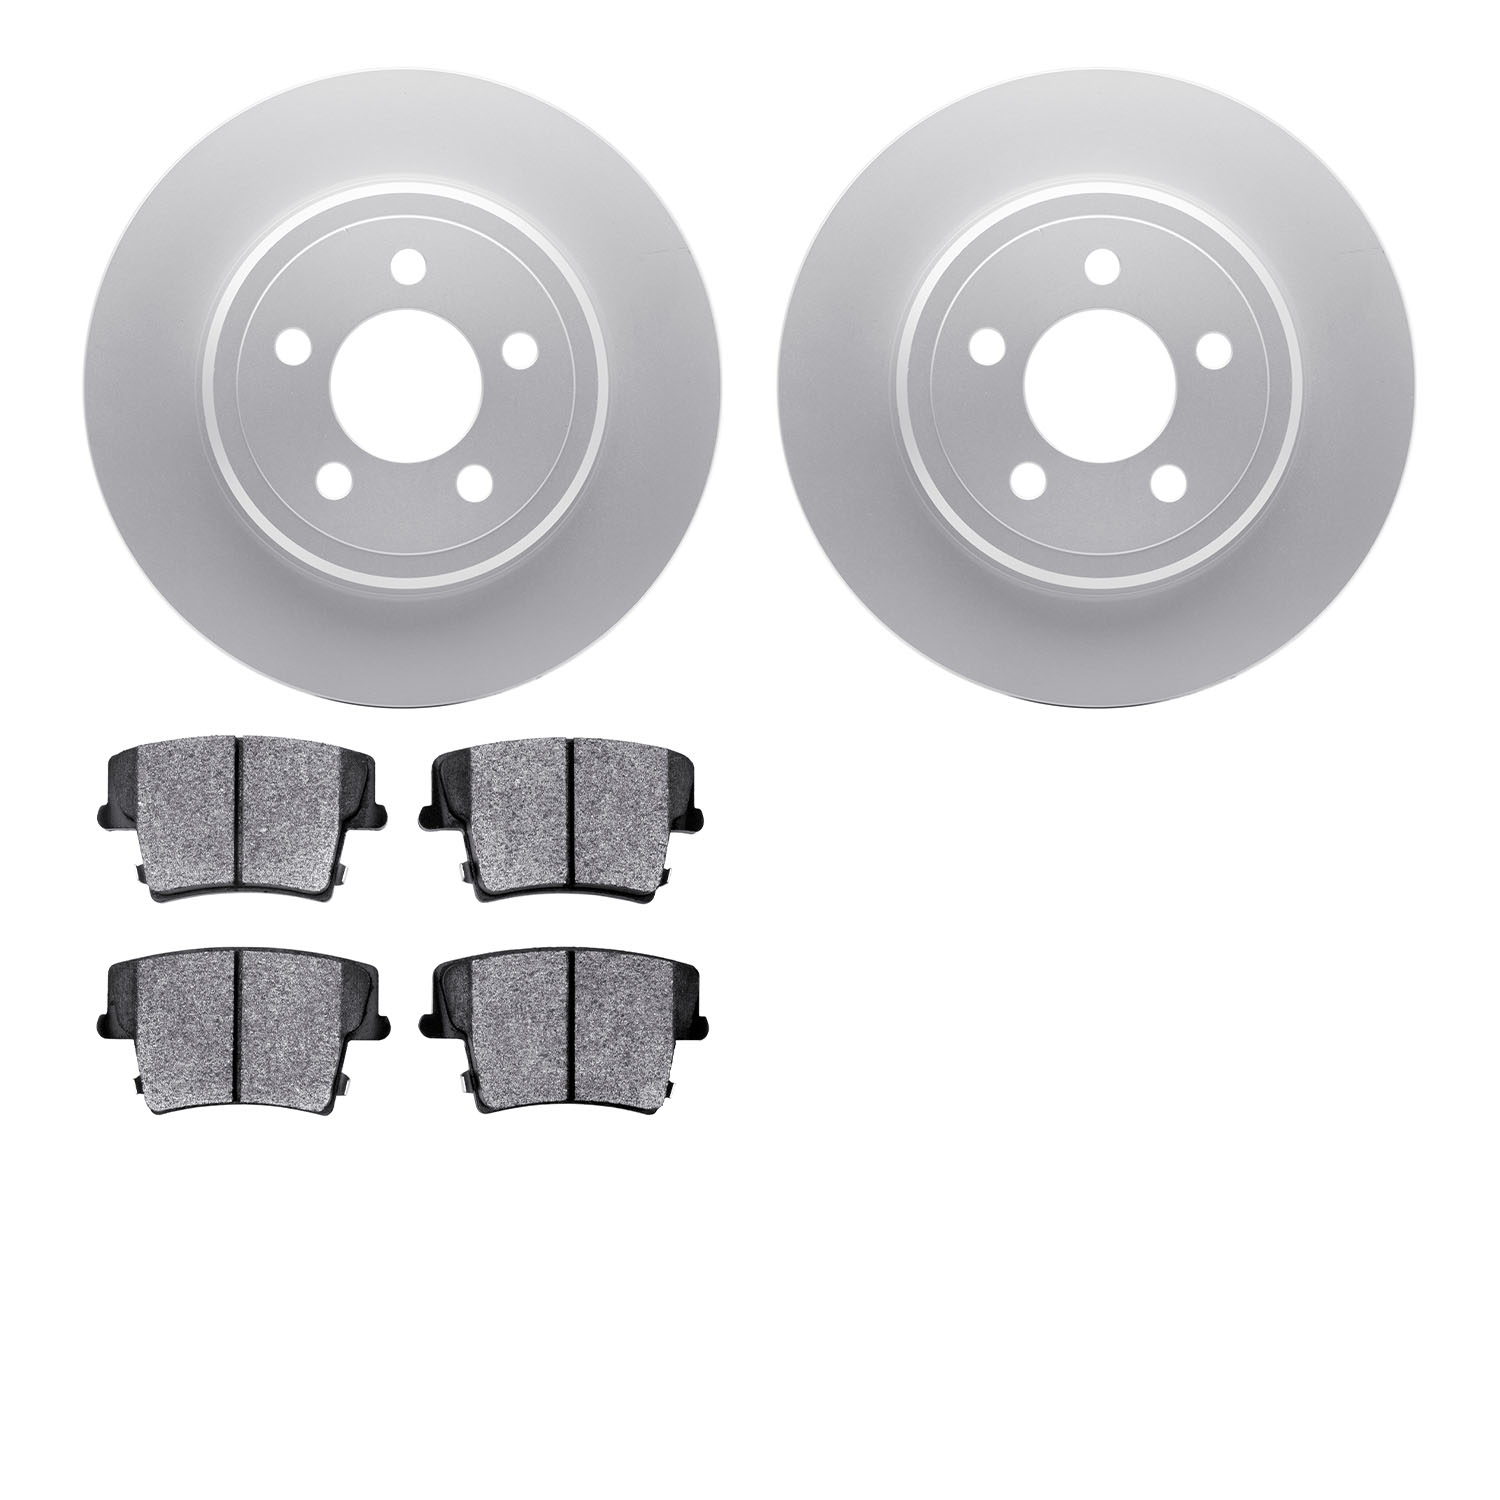 4202-39045 Geospec Brake Rotors w/Heavy-Duty Brake Pads Kit, Fits Select Mopar, Position: Rear